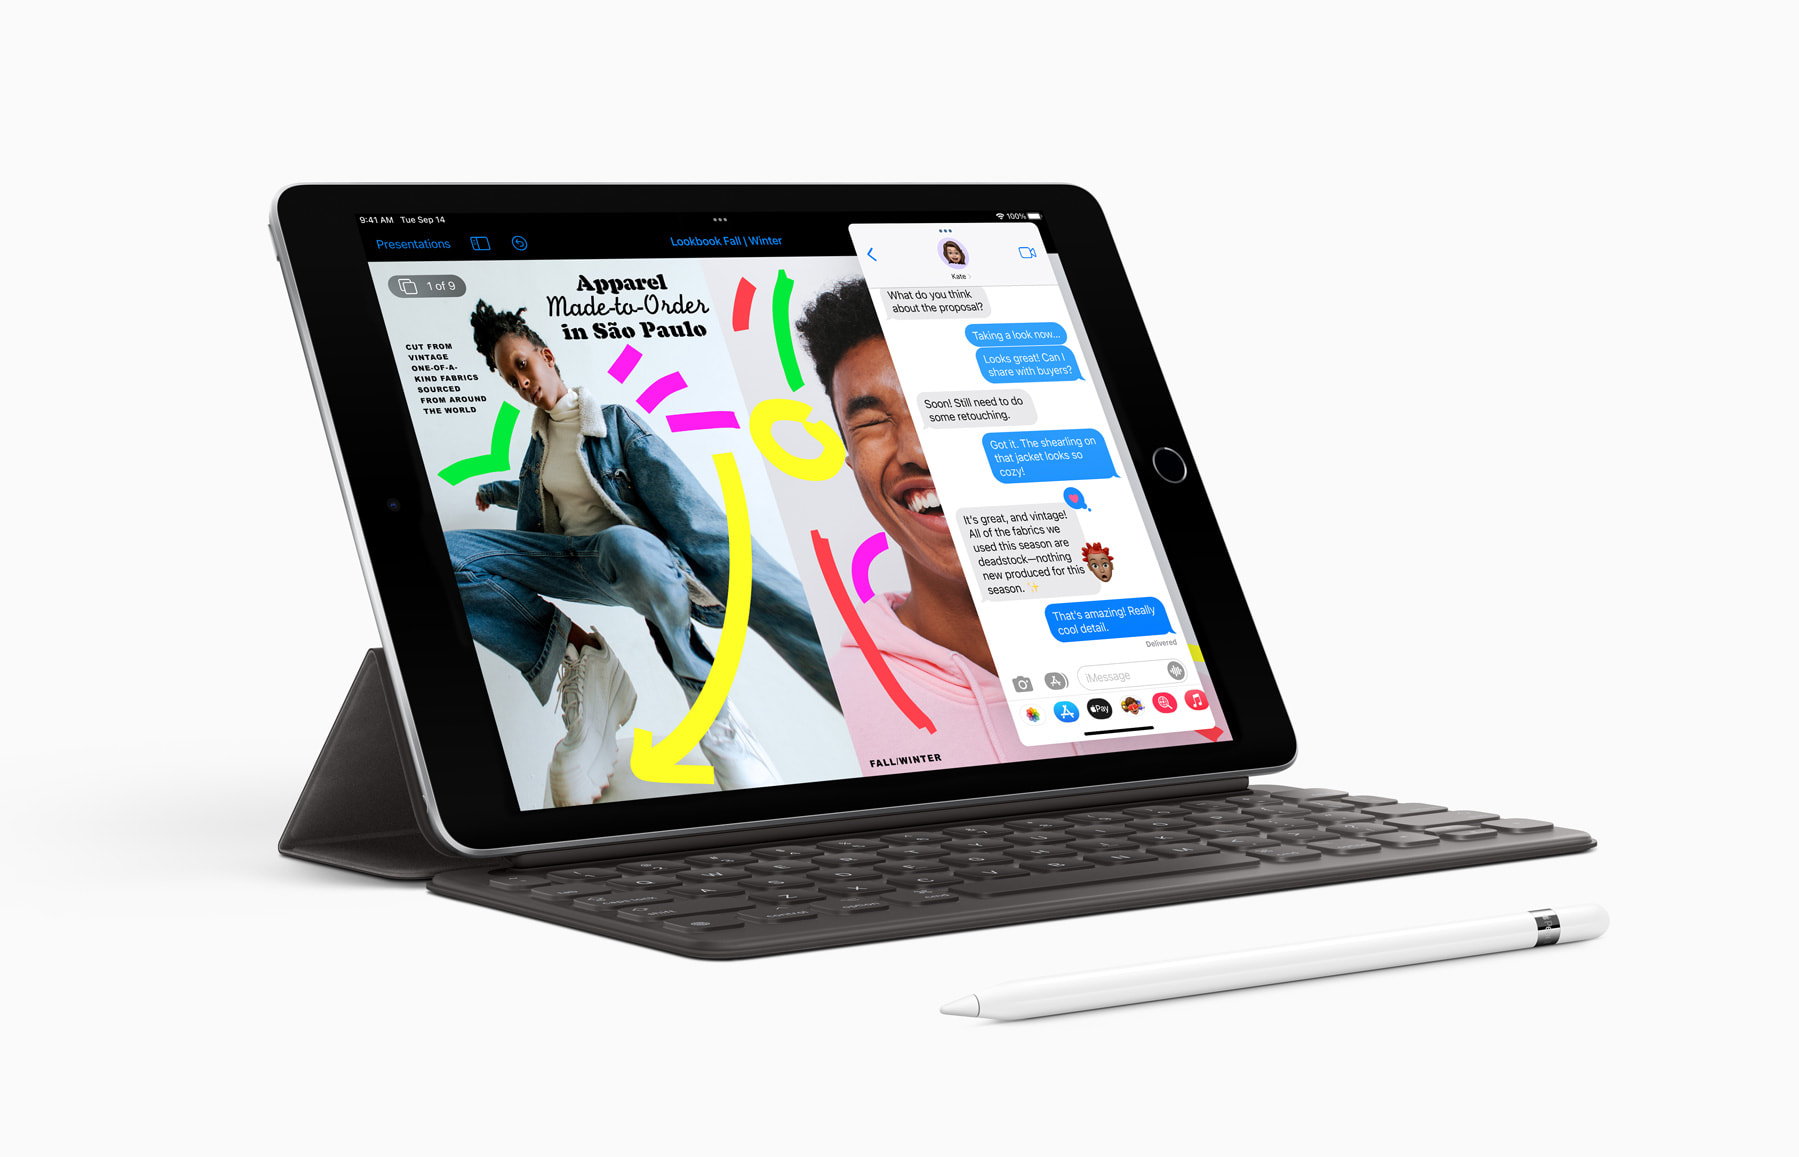 iPad第9世代＋Apple pencil